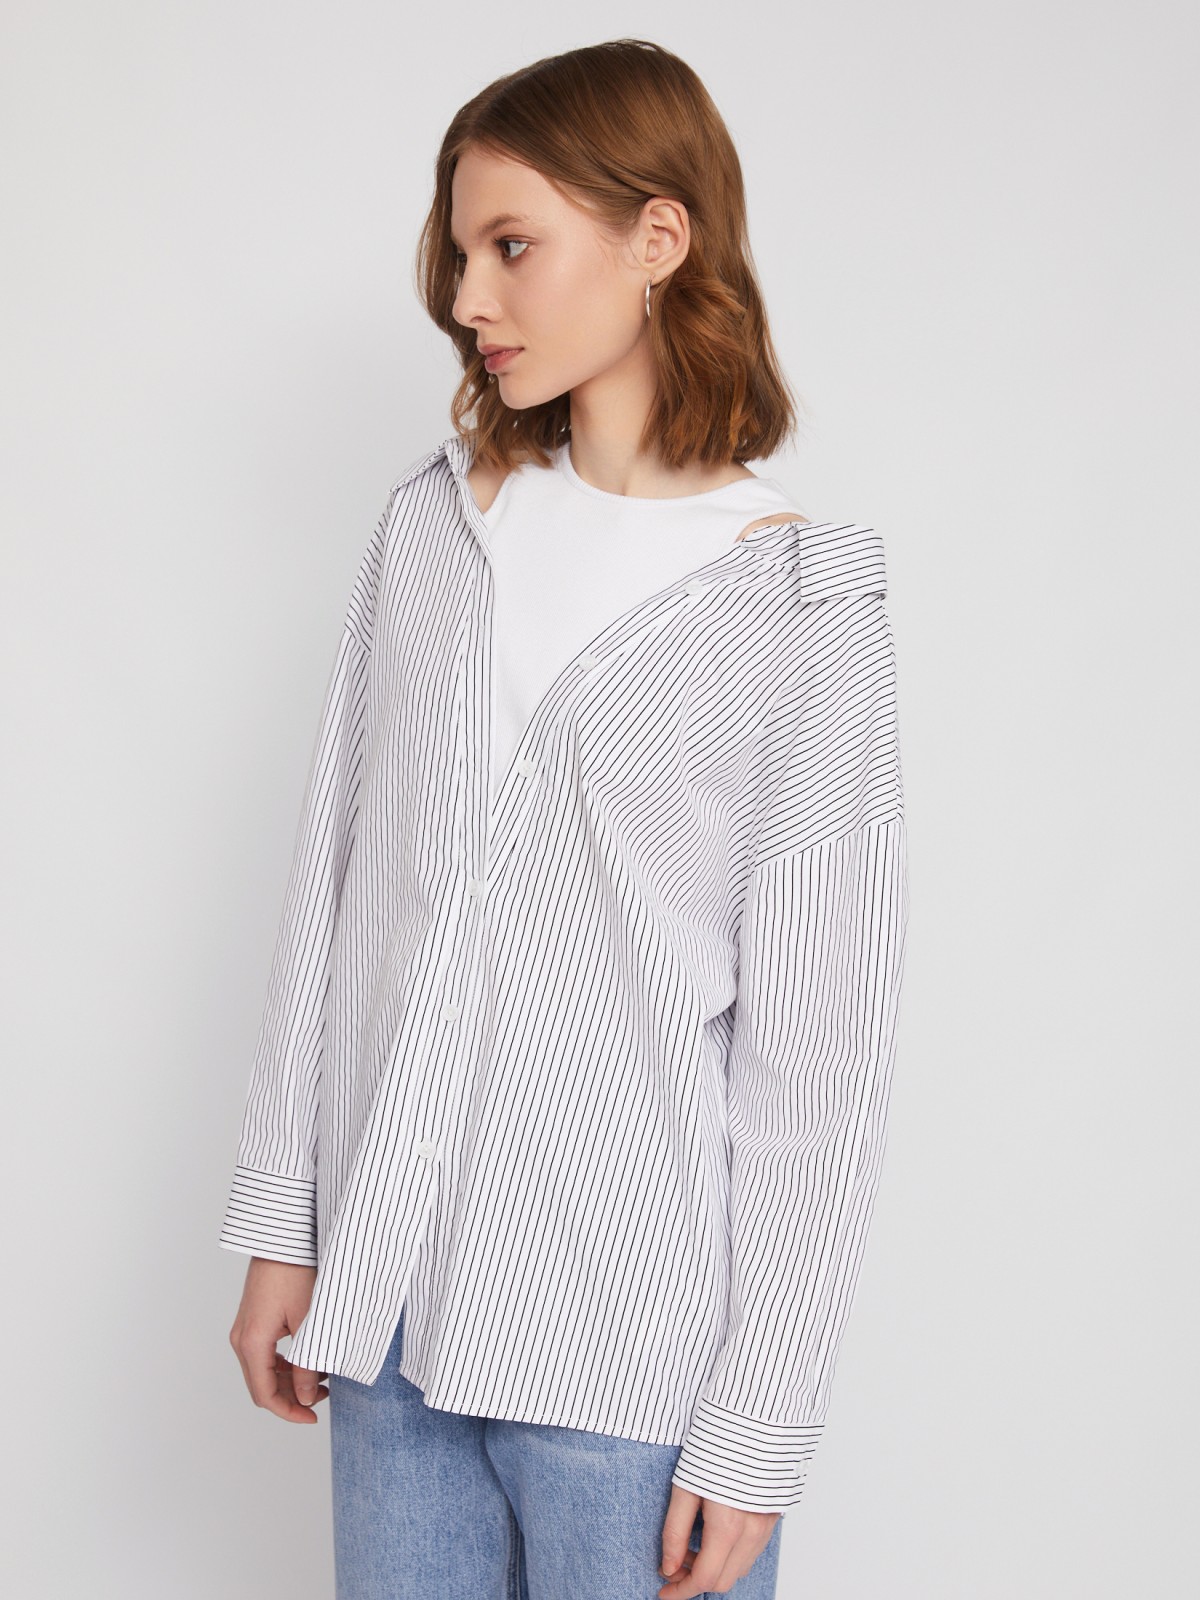 Комбинированная блузка-рубашка с вшитым топом zolla 02421117Y023, цвет белый, размер XS